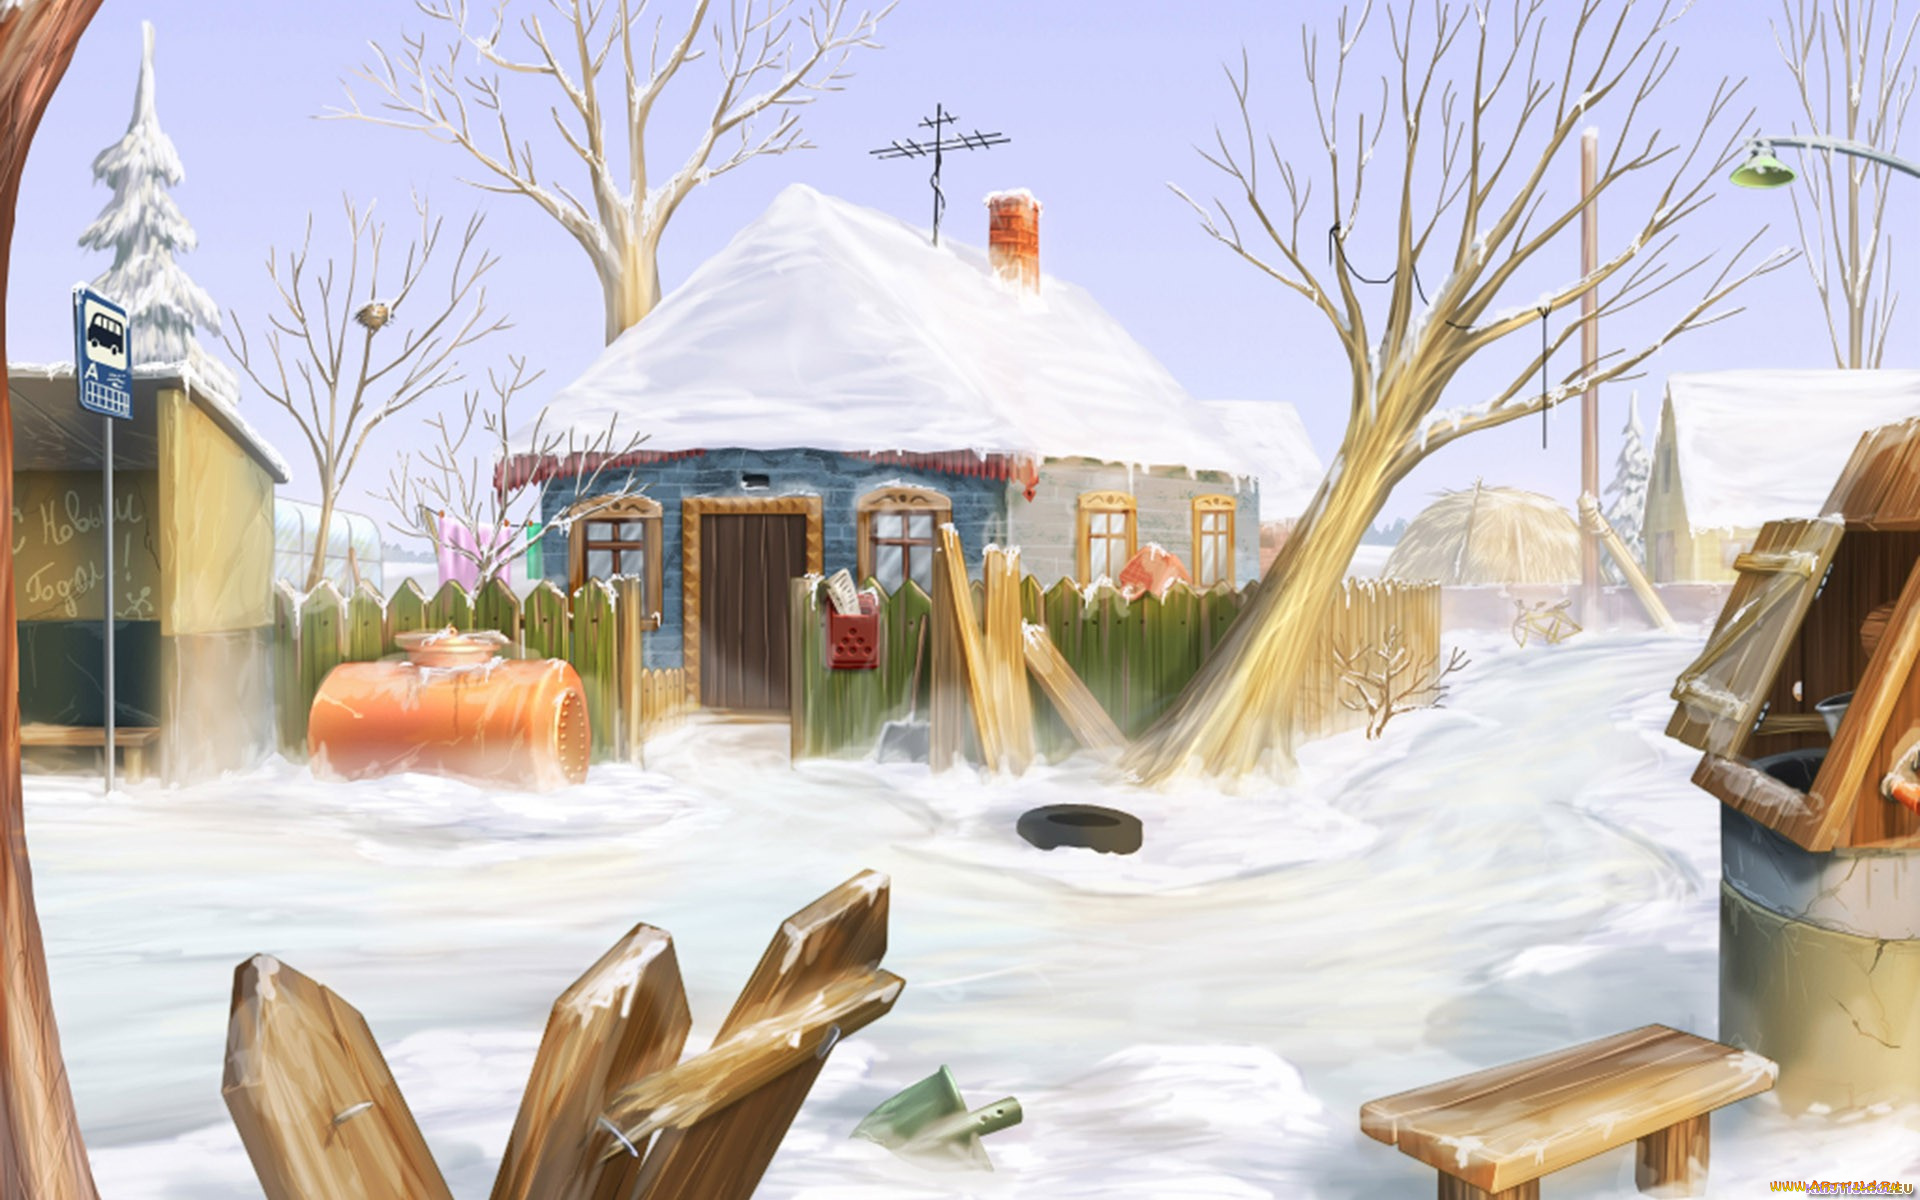 рисованное, города, деревня, дома, снег, остановка, колодец, деревья